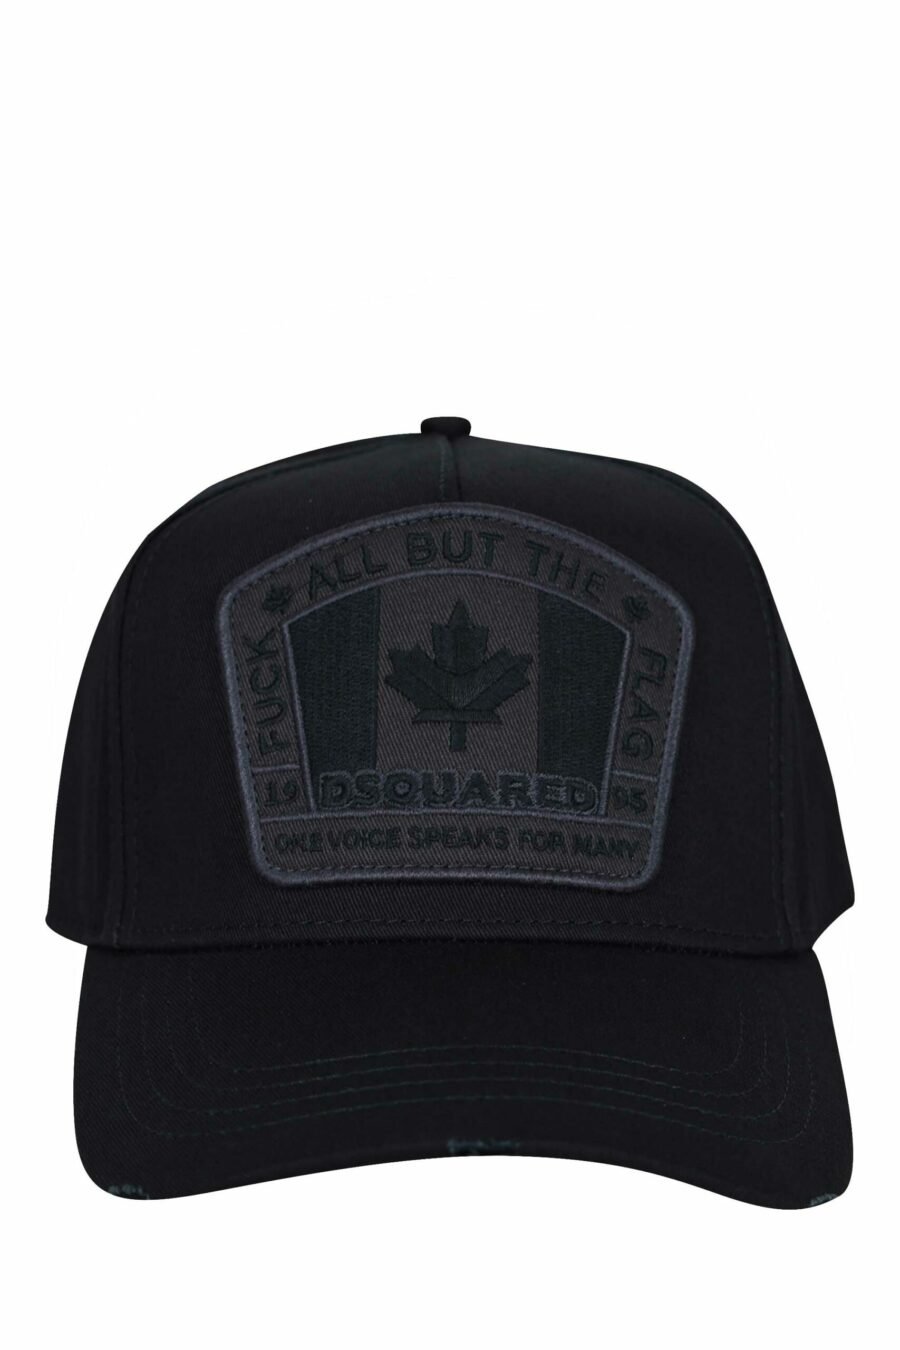 Casquette noire avec logo monochrome du Canada - 8055777160626